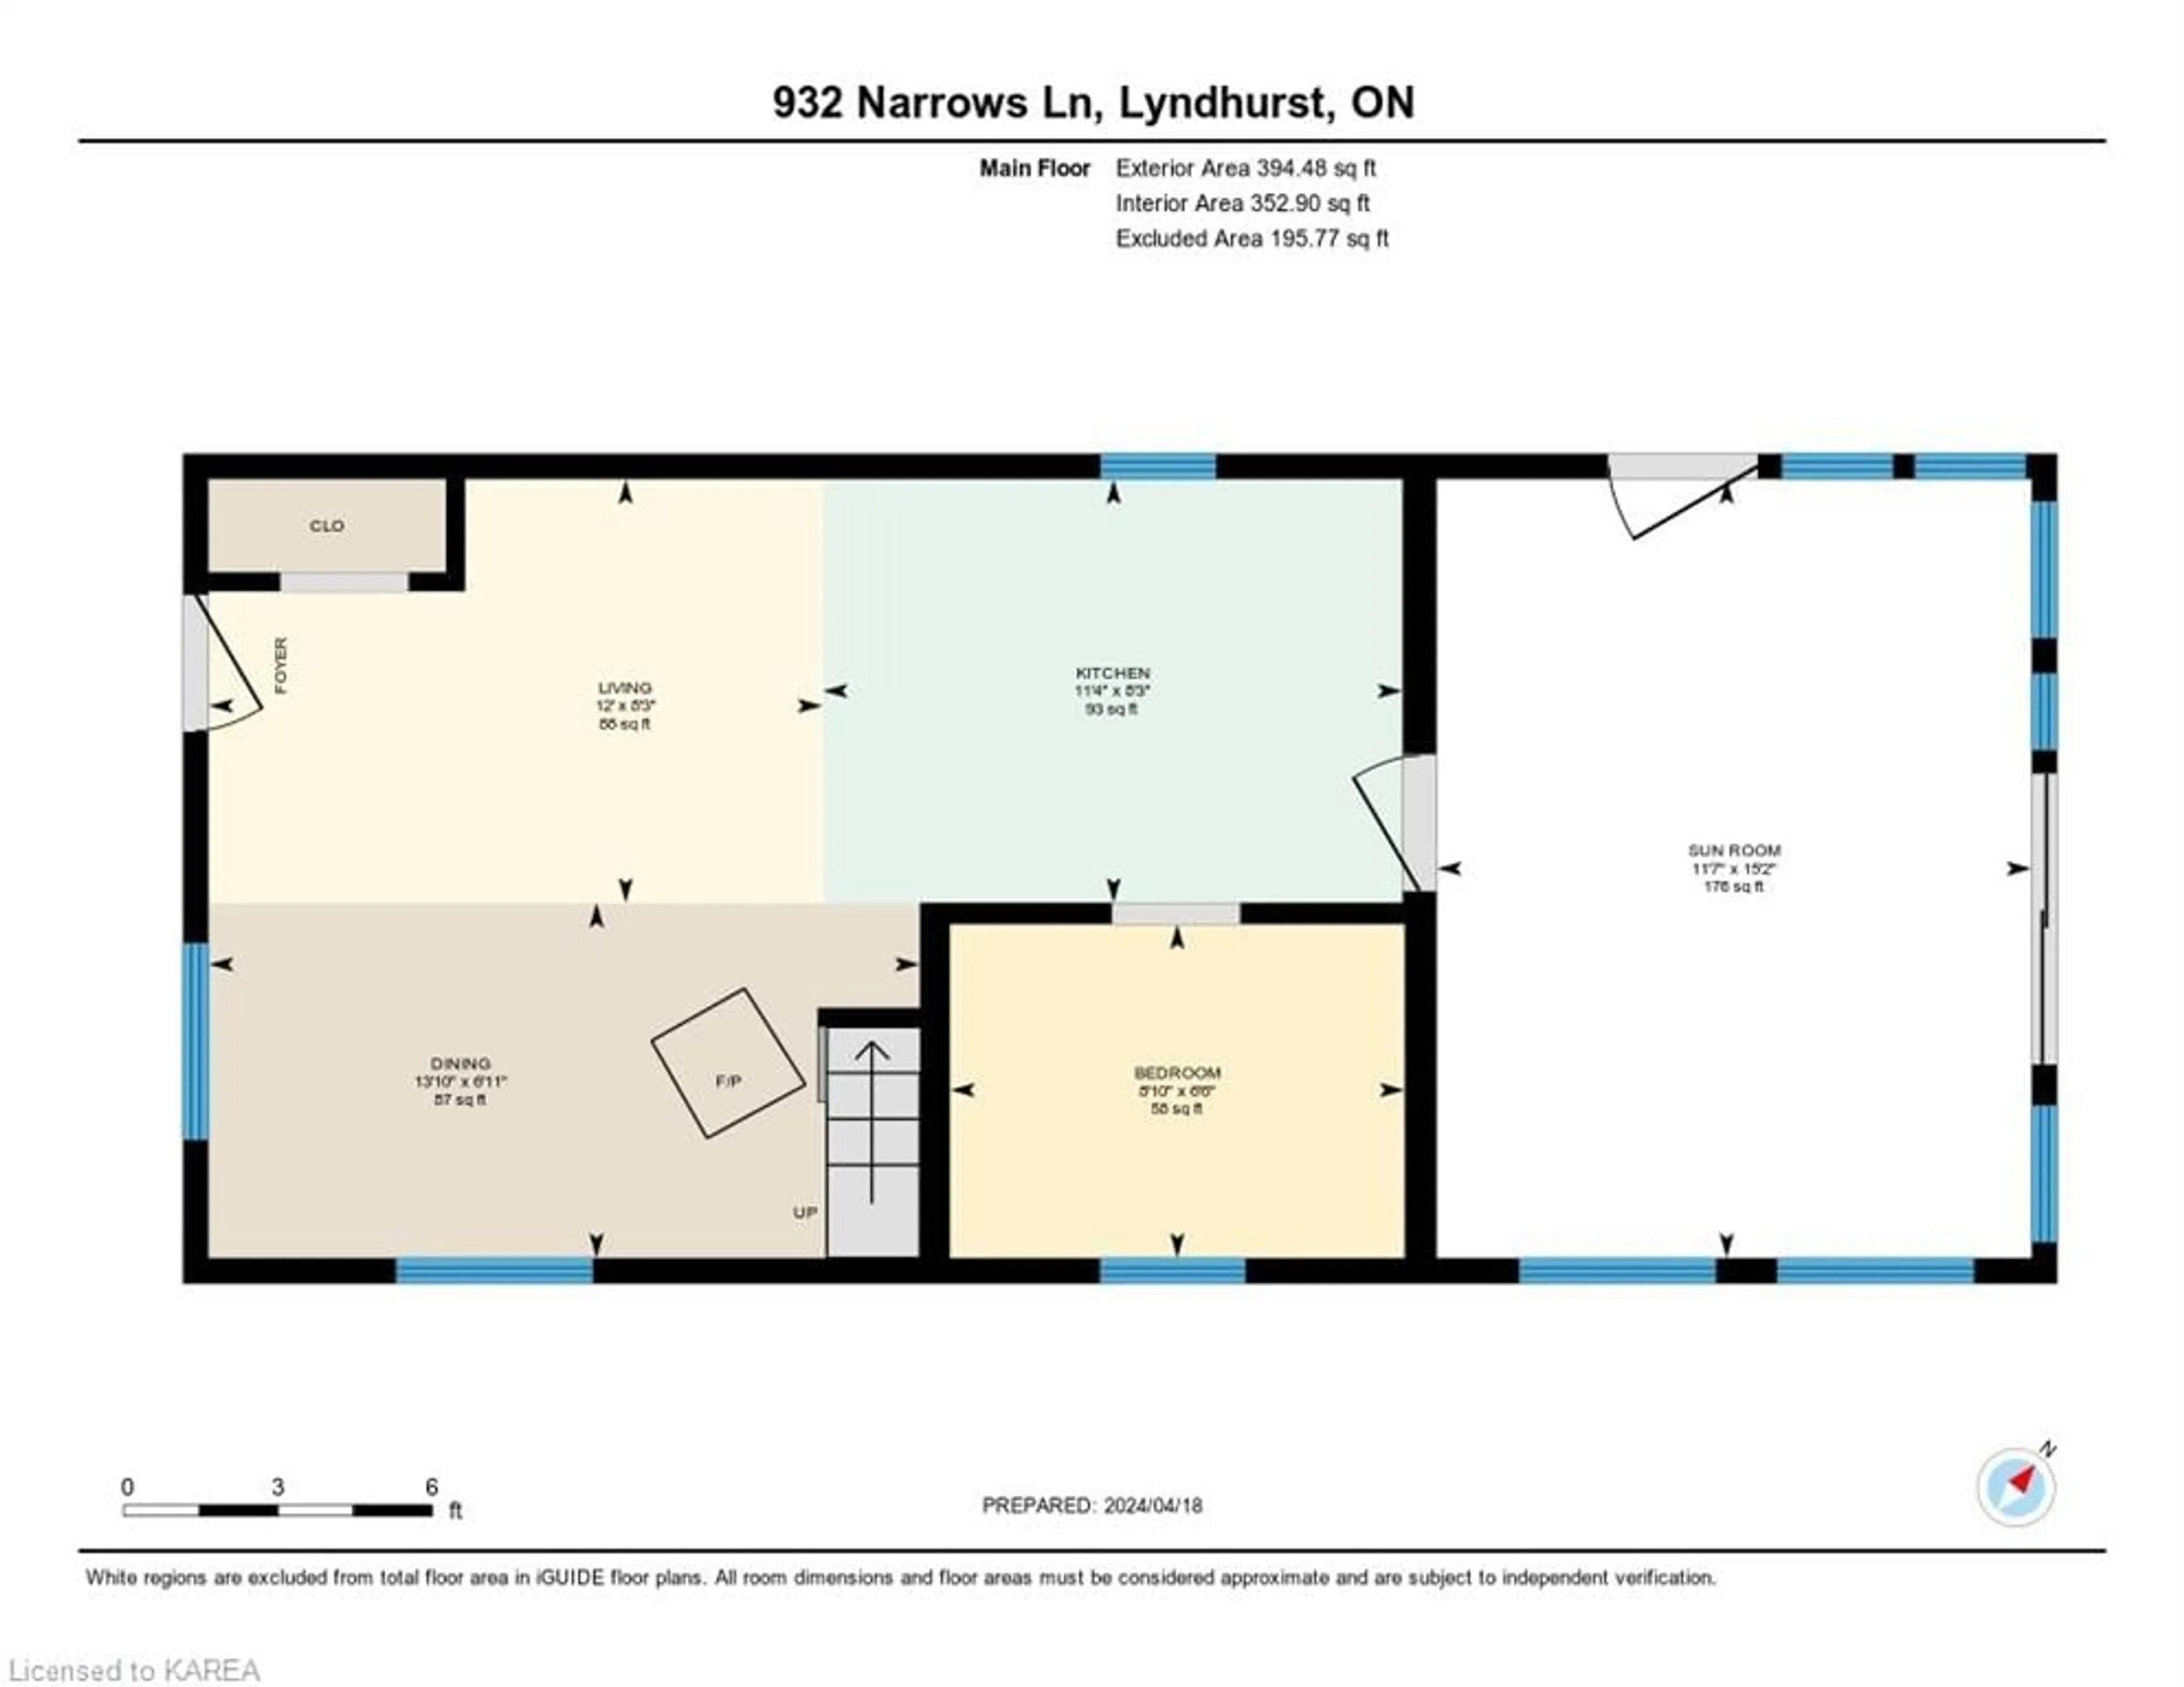 Floor plan for 932 Narrows Lane, Lyndhurst Ontario K0E 1N0